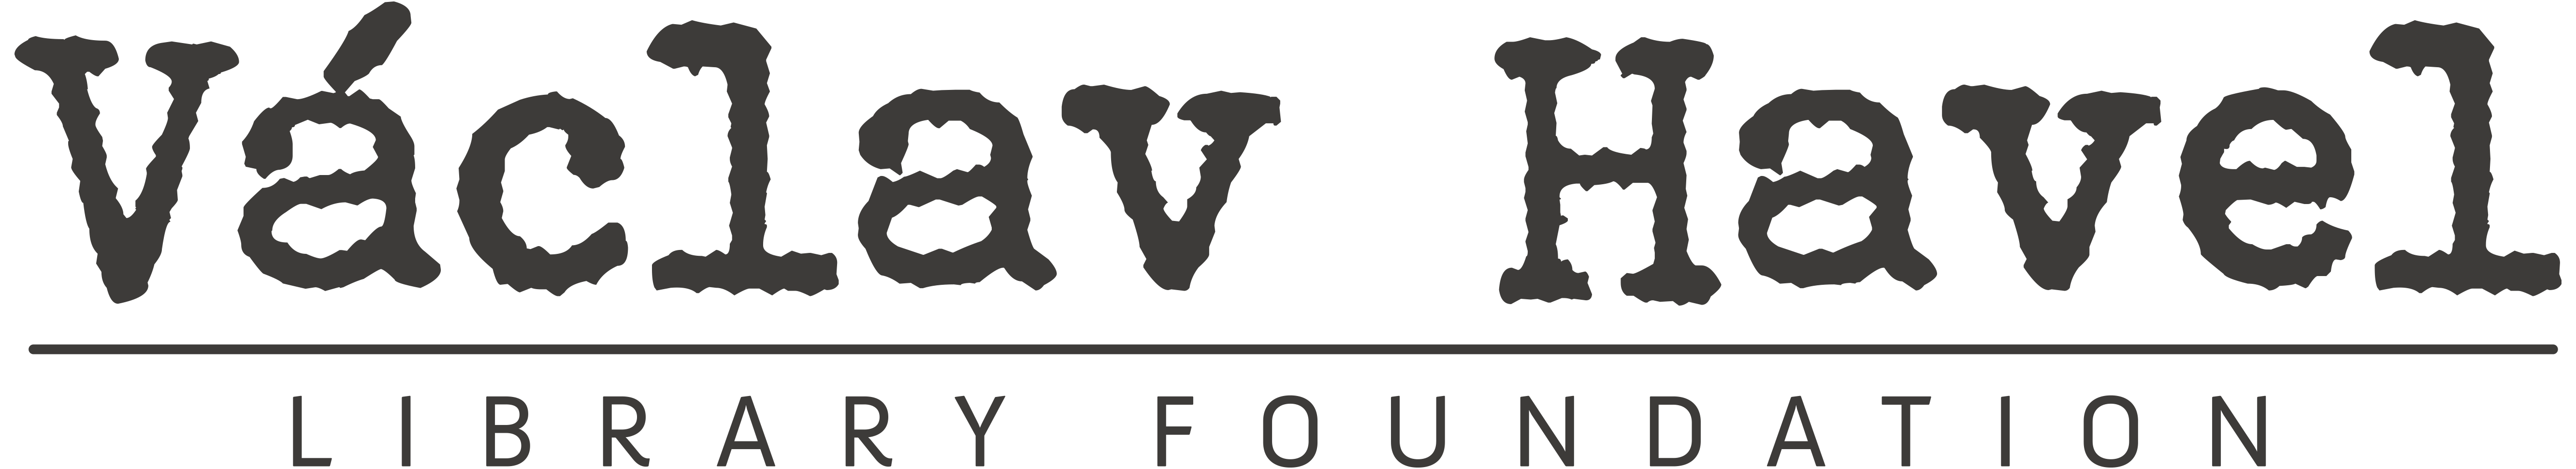 VHLF logo